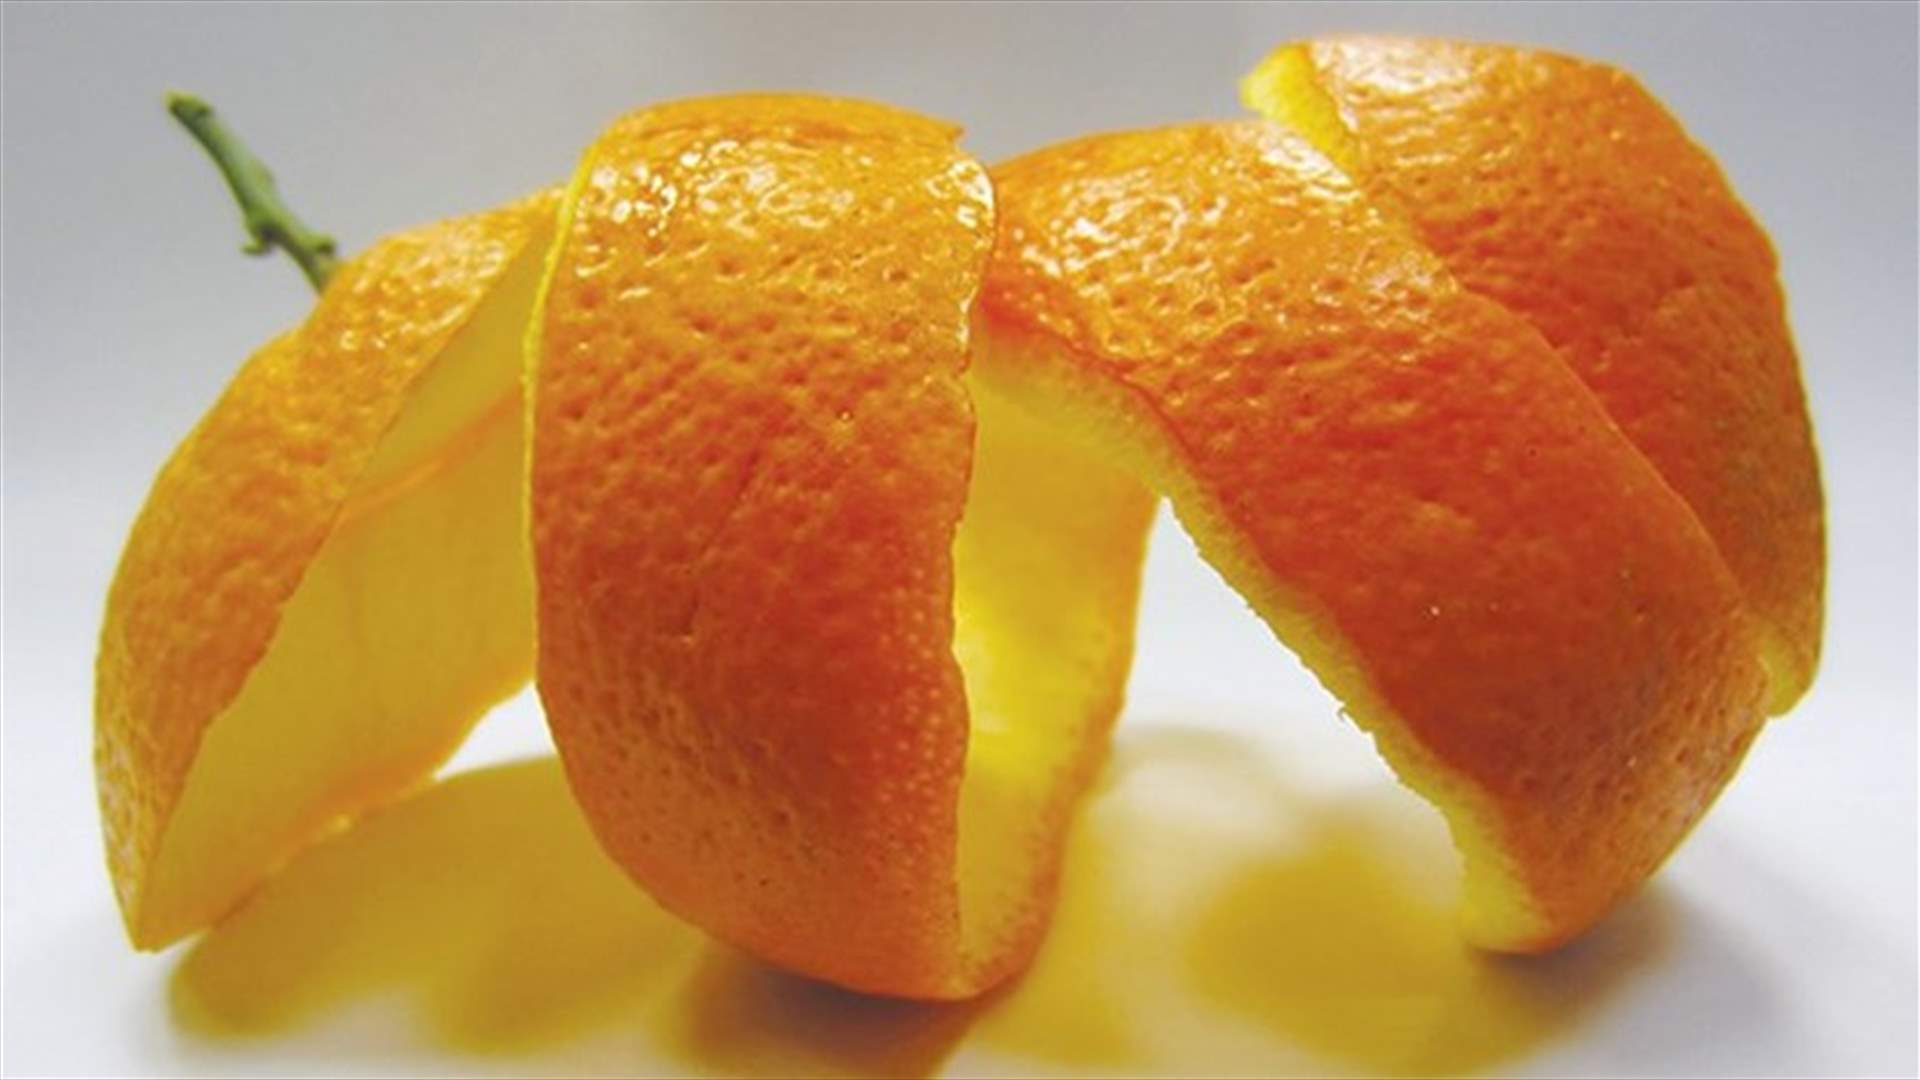 فائدة مهمّة لقشور البرتقال ستمنعكِ من رميها